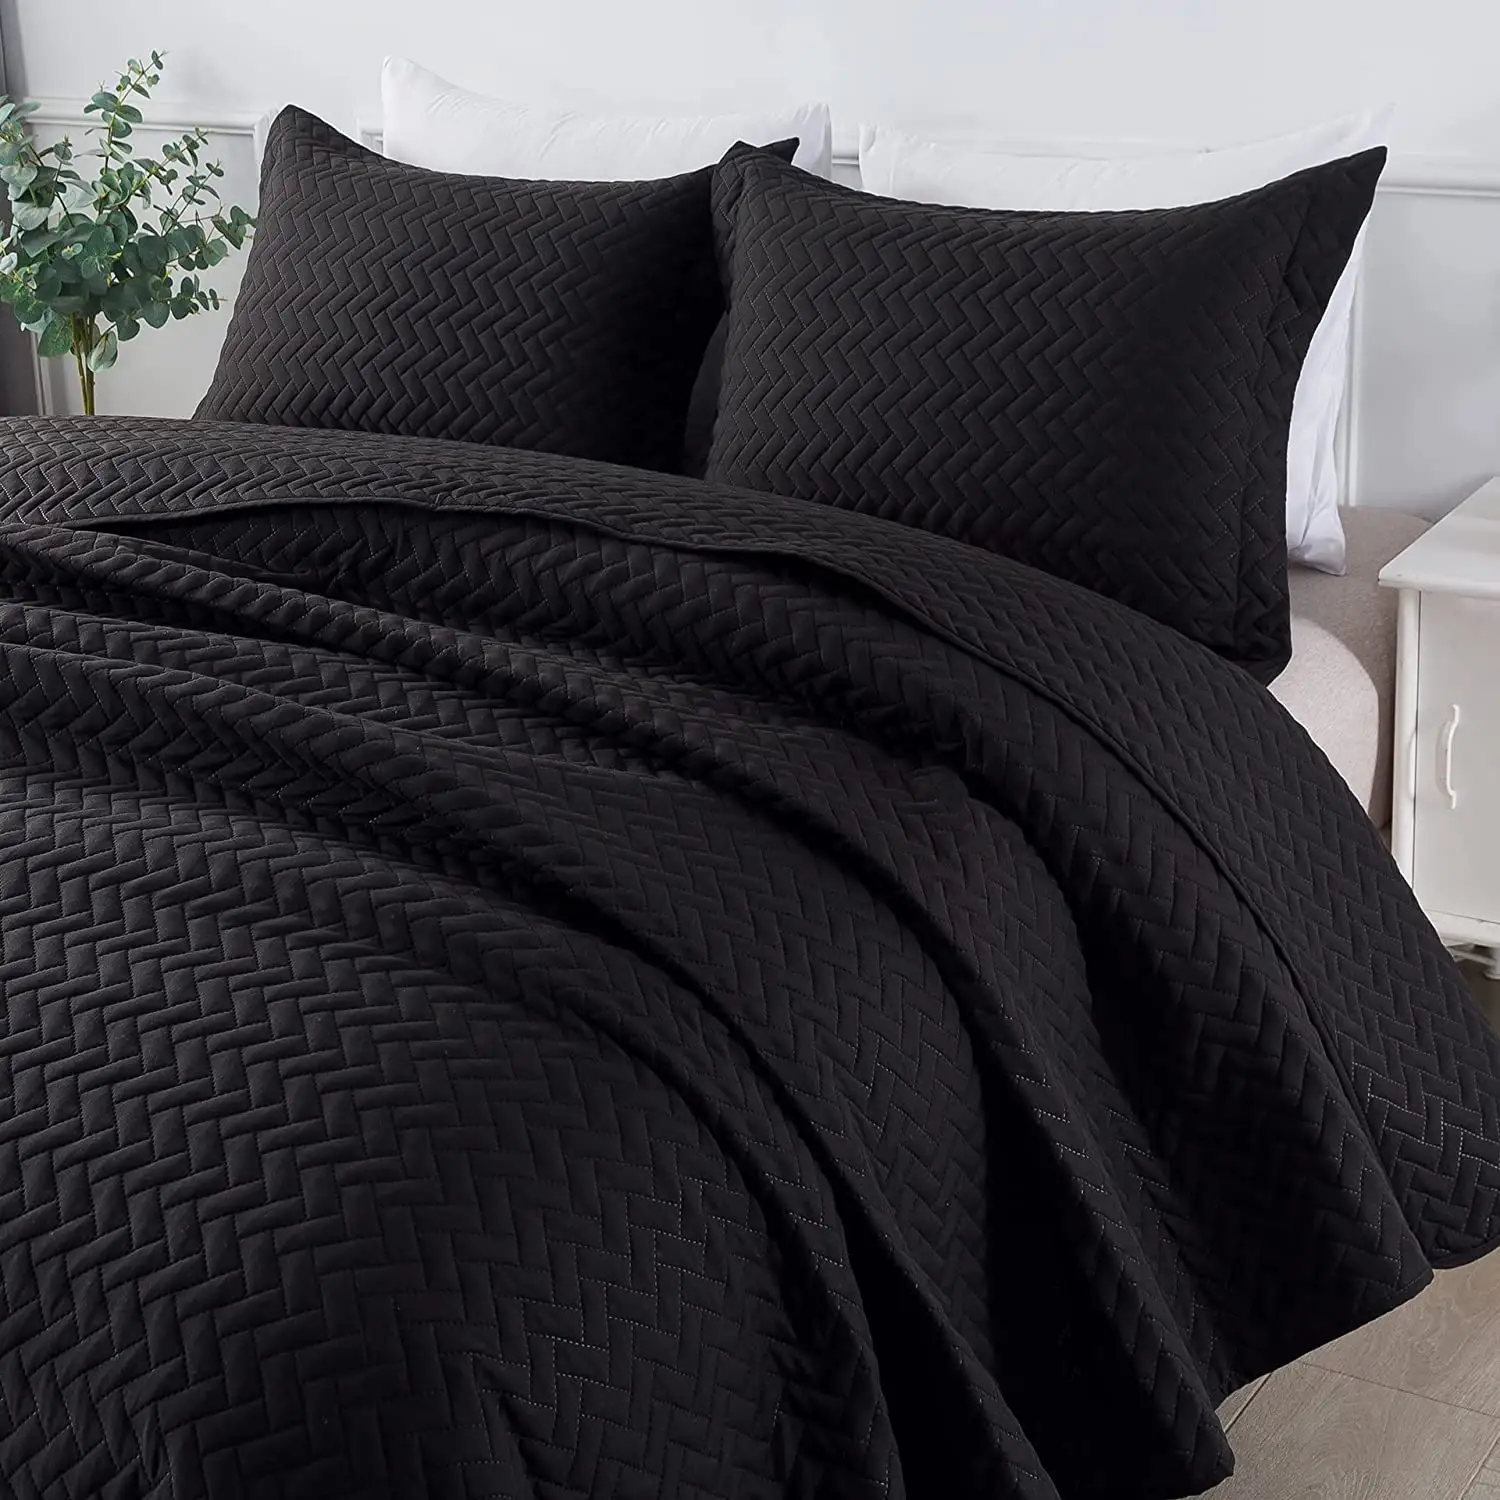 Customize Factory Direct Solid Soft Bed 4 Pcs Summer Quilt Lightweight Microfiber Duvet Comforter Bedspreads Bed Linen Quilt